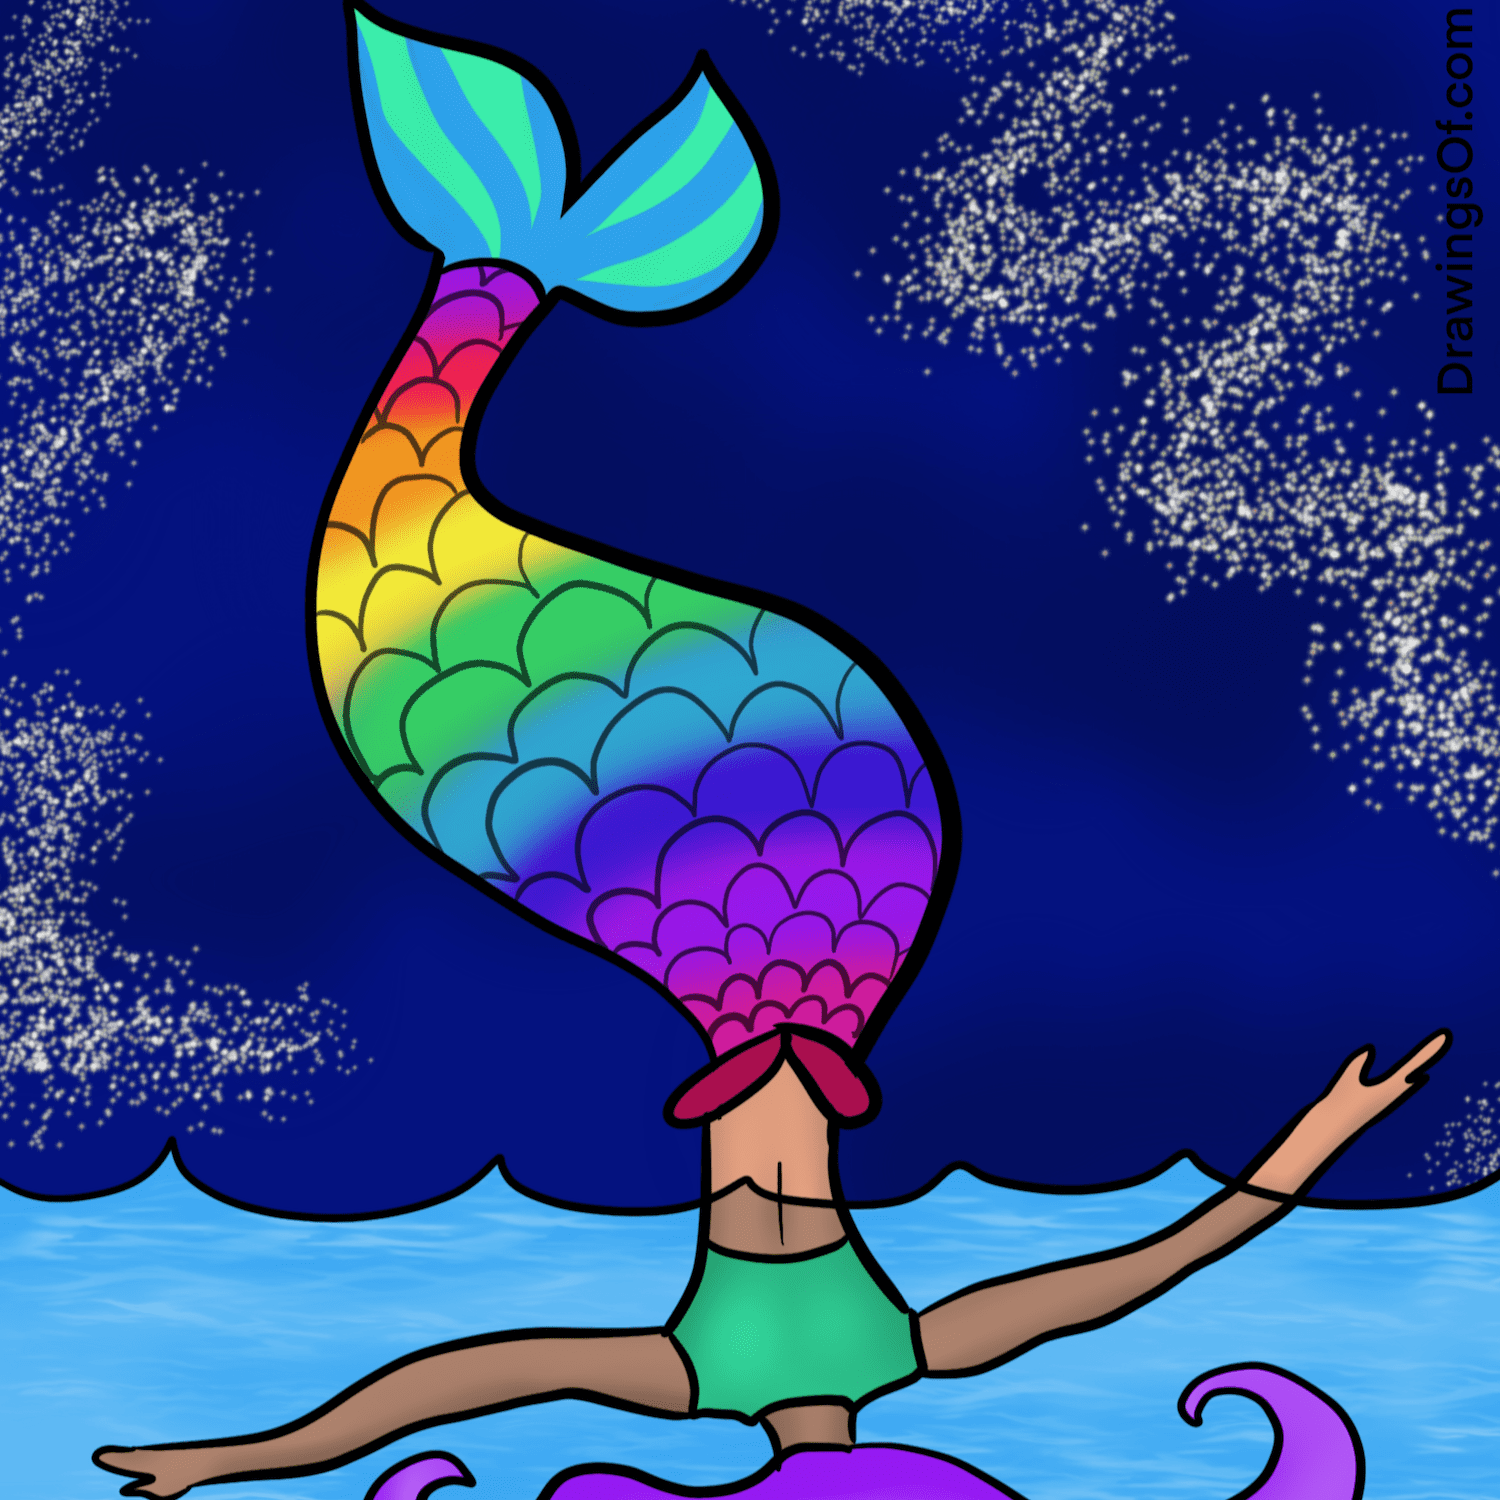 Mermaid tail drawing tutorial